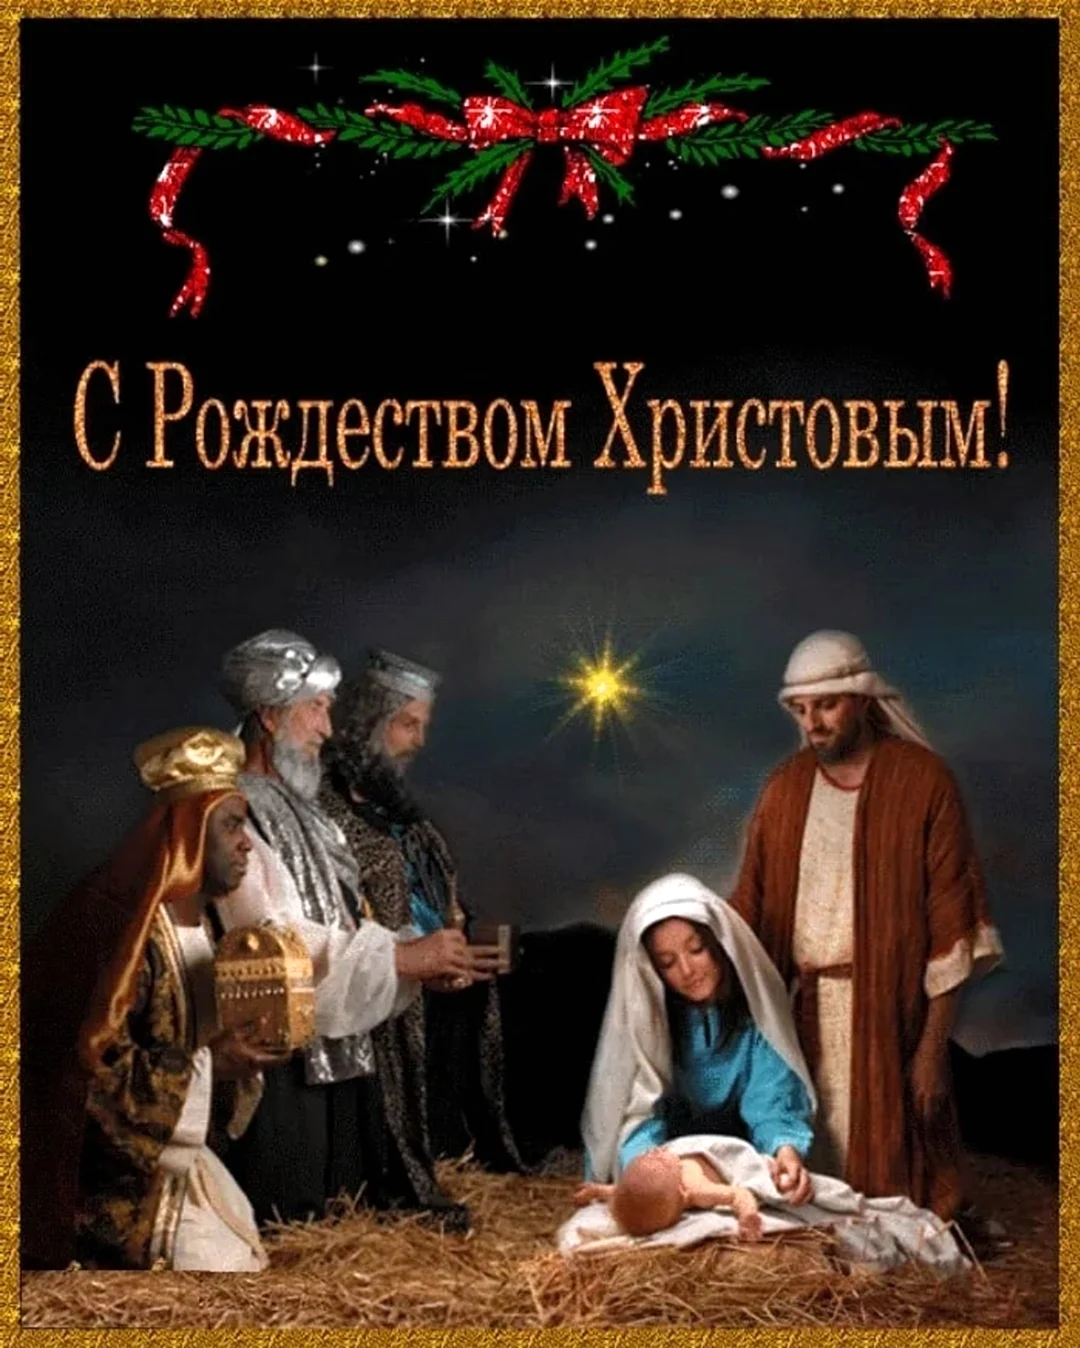 Рождество Христово. Открытка, картинка с поздравлением, с праздником